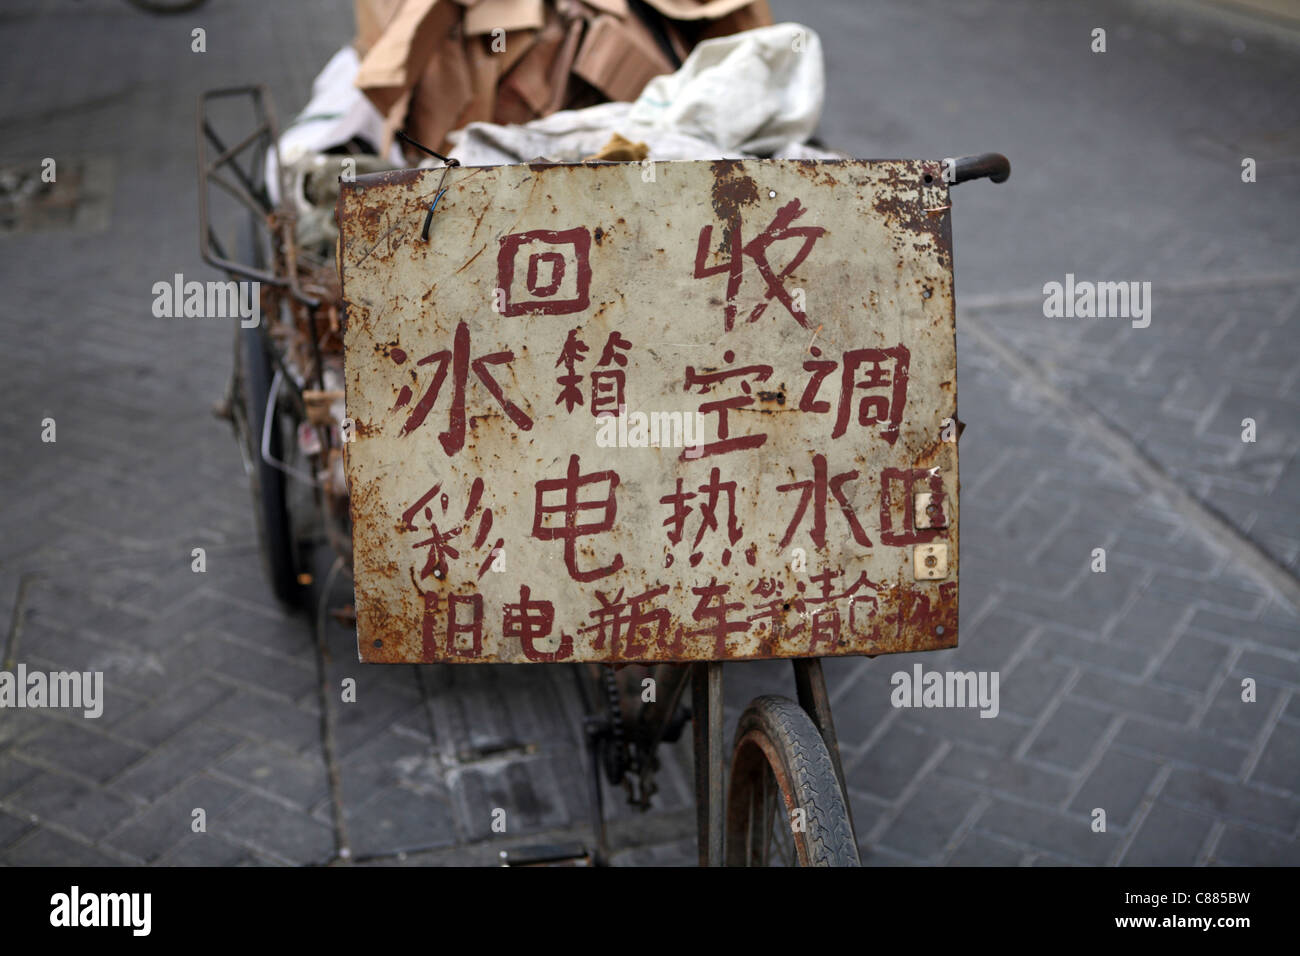 Indicazioni sui tricicli utilizzati da lavoratori migranti in Hangzhou, la Cina per la raccolta recyclables, tipicamente dicendo voleva computer etc. Foto Stock